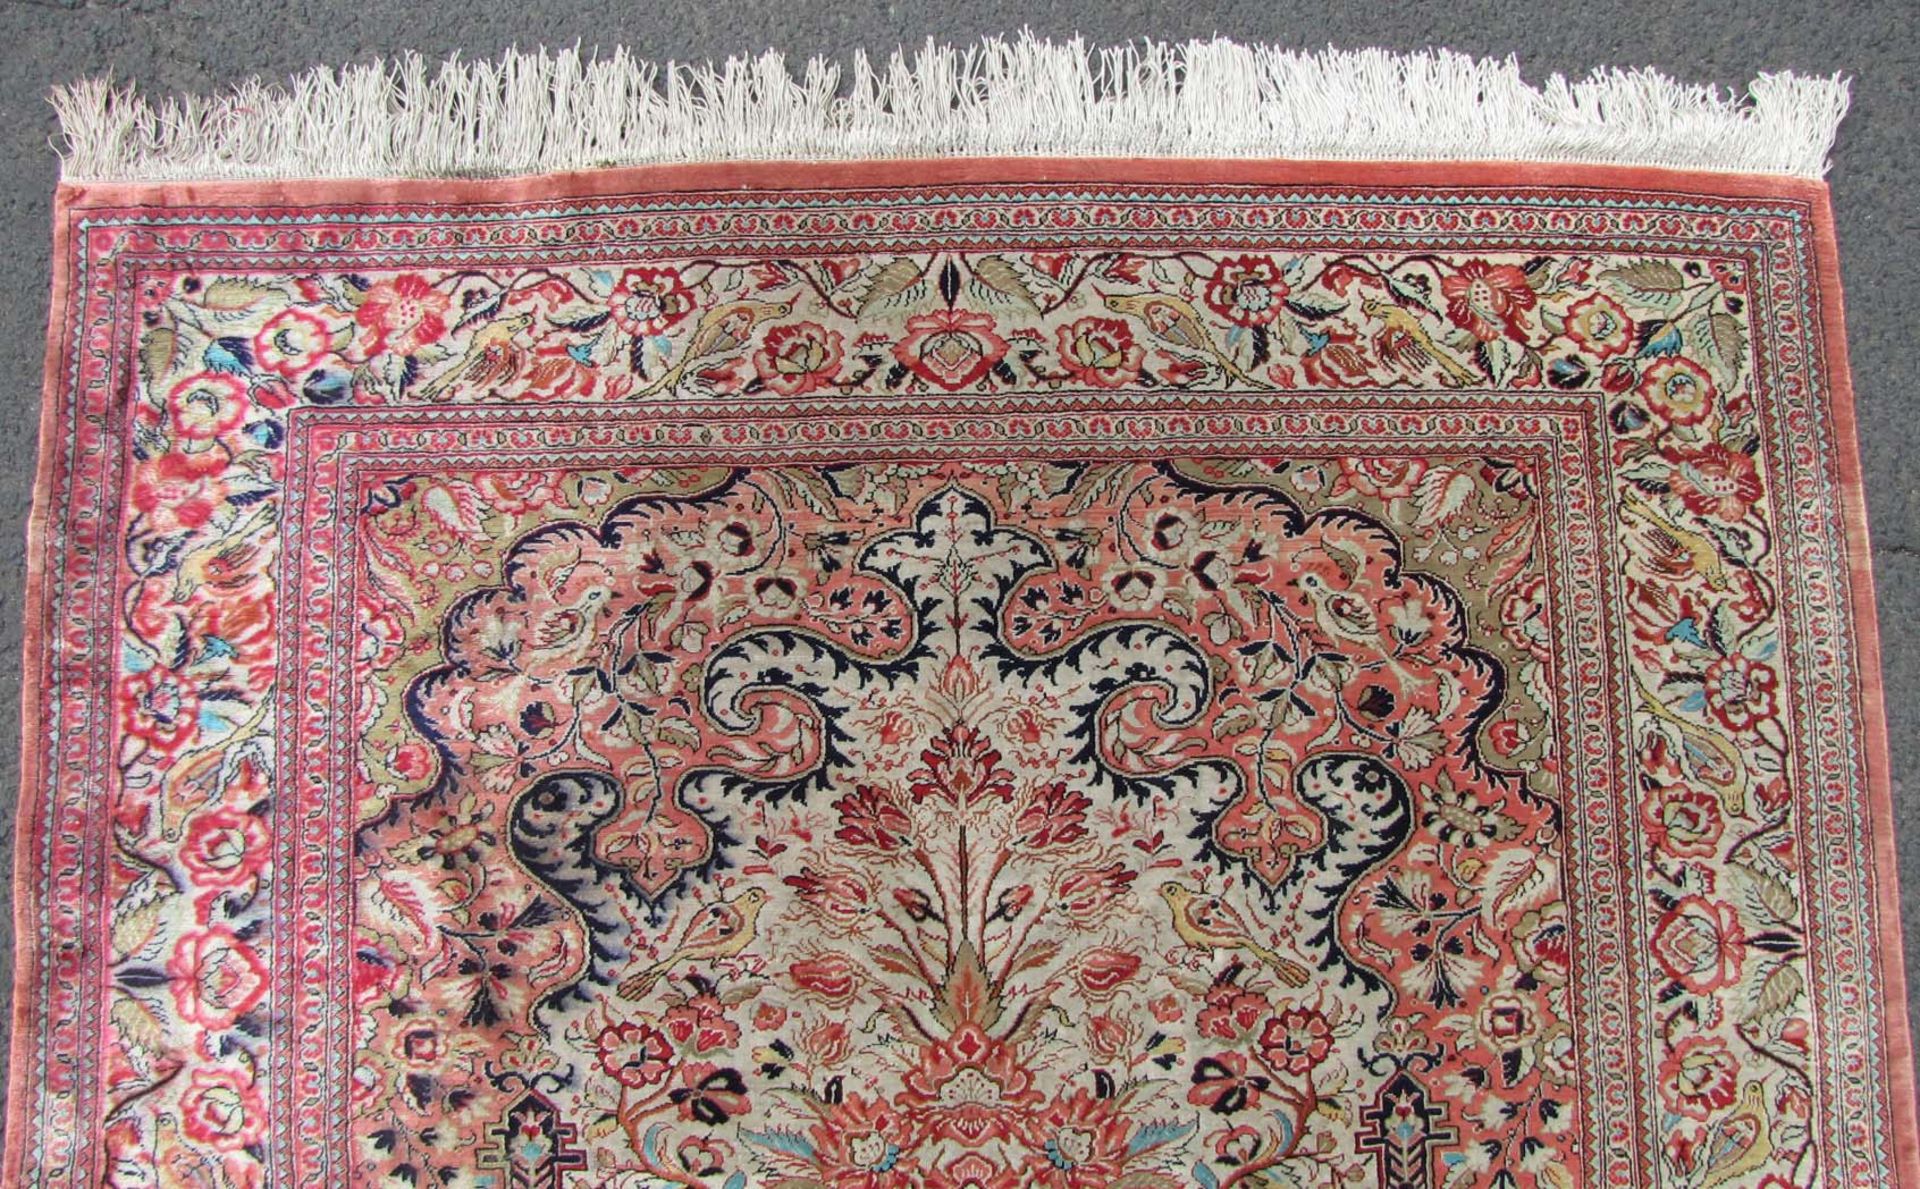 Ghom Seidenteppich. Gebetsteppich. Iran. Sehr feine Knüpfung.152 cm x 105 cm. Handgeknüpft. Seide - Bild 4 aus 6